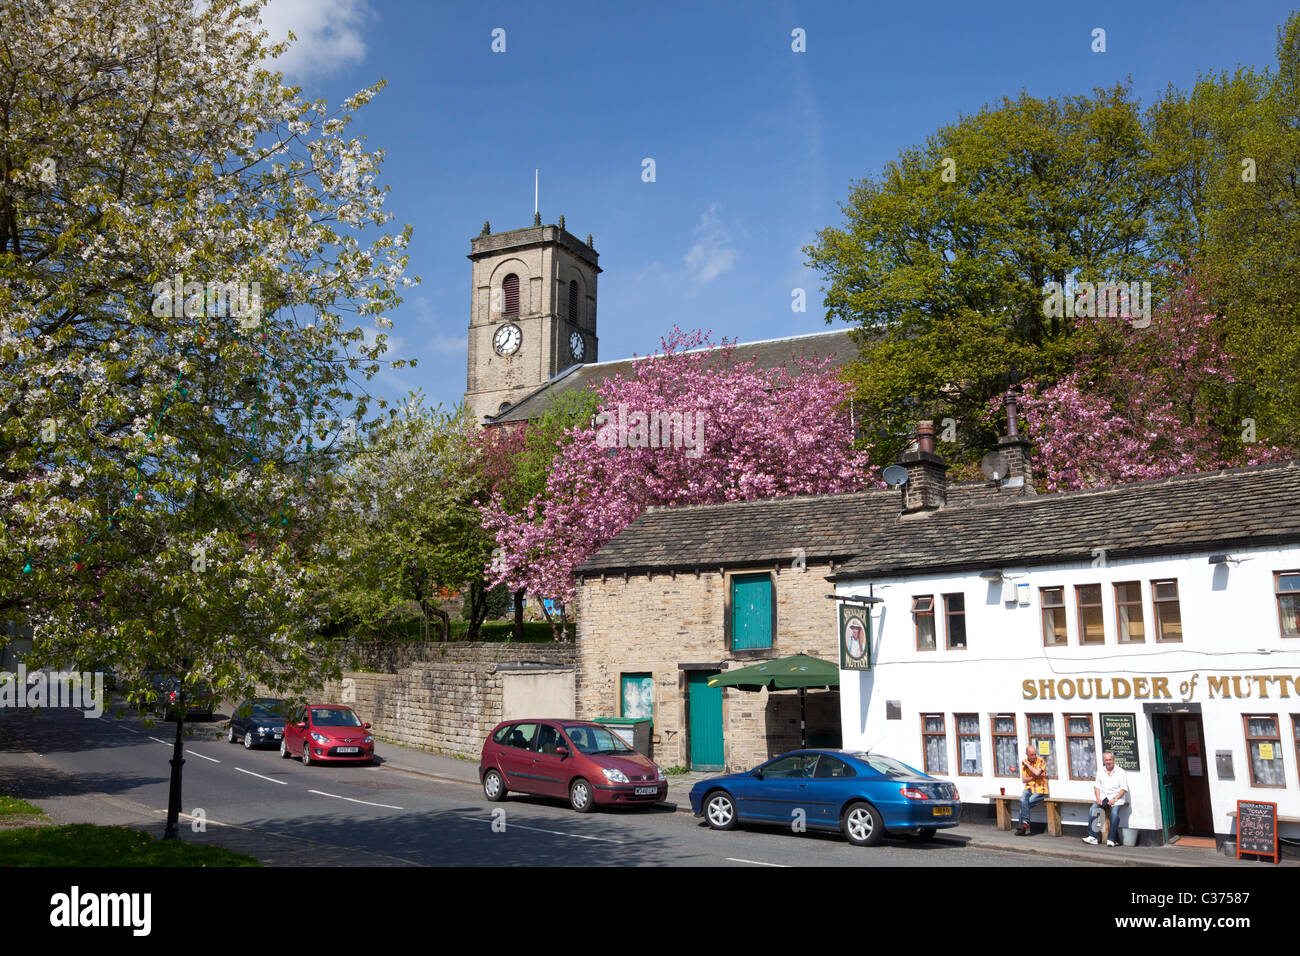 St James chiesa e la spalla di montone pub, Slaithwaite, West Yorkshire Foto Stock